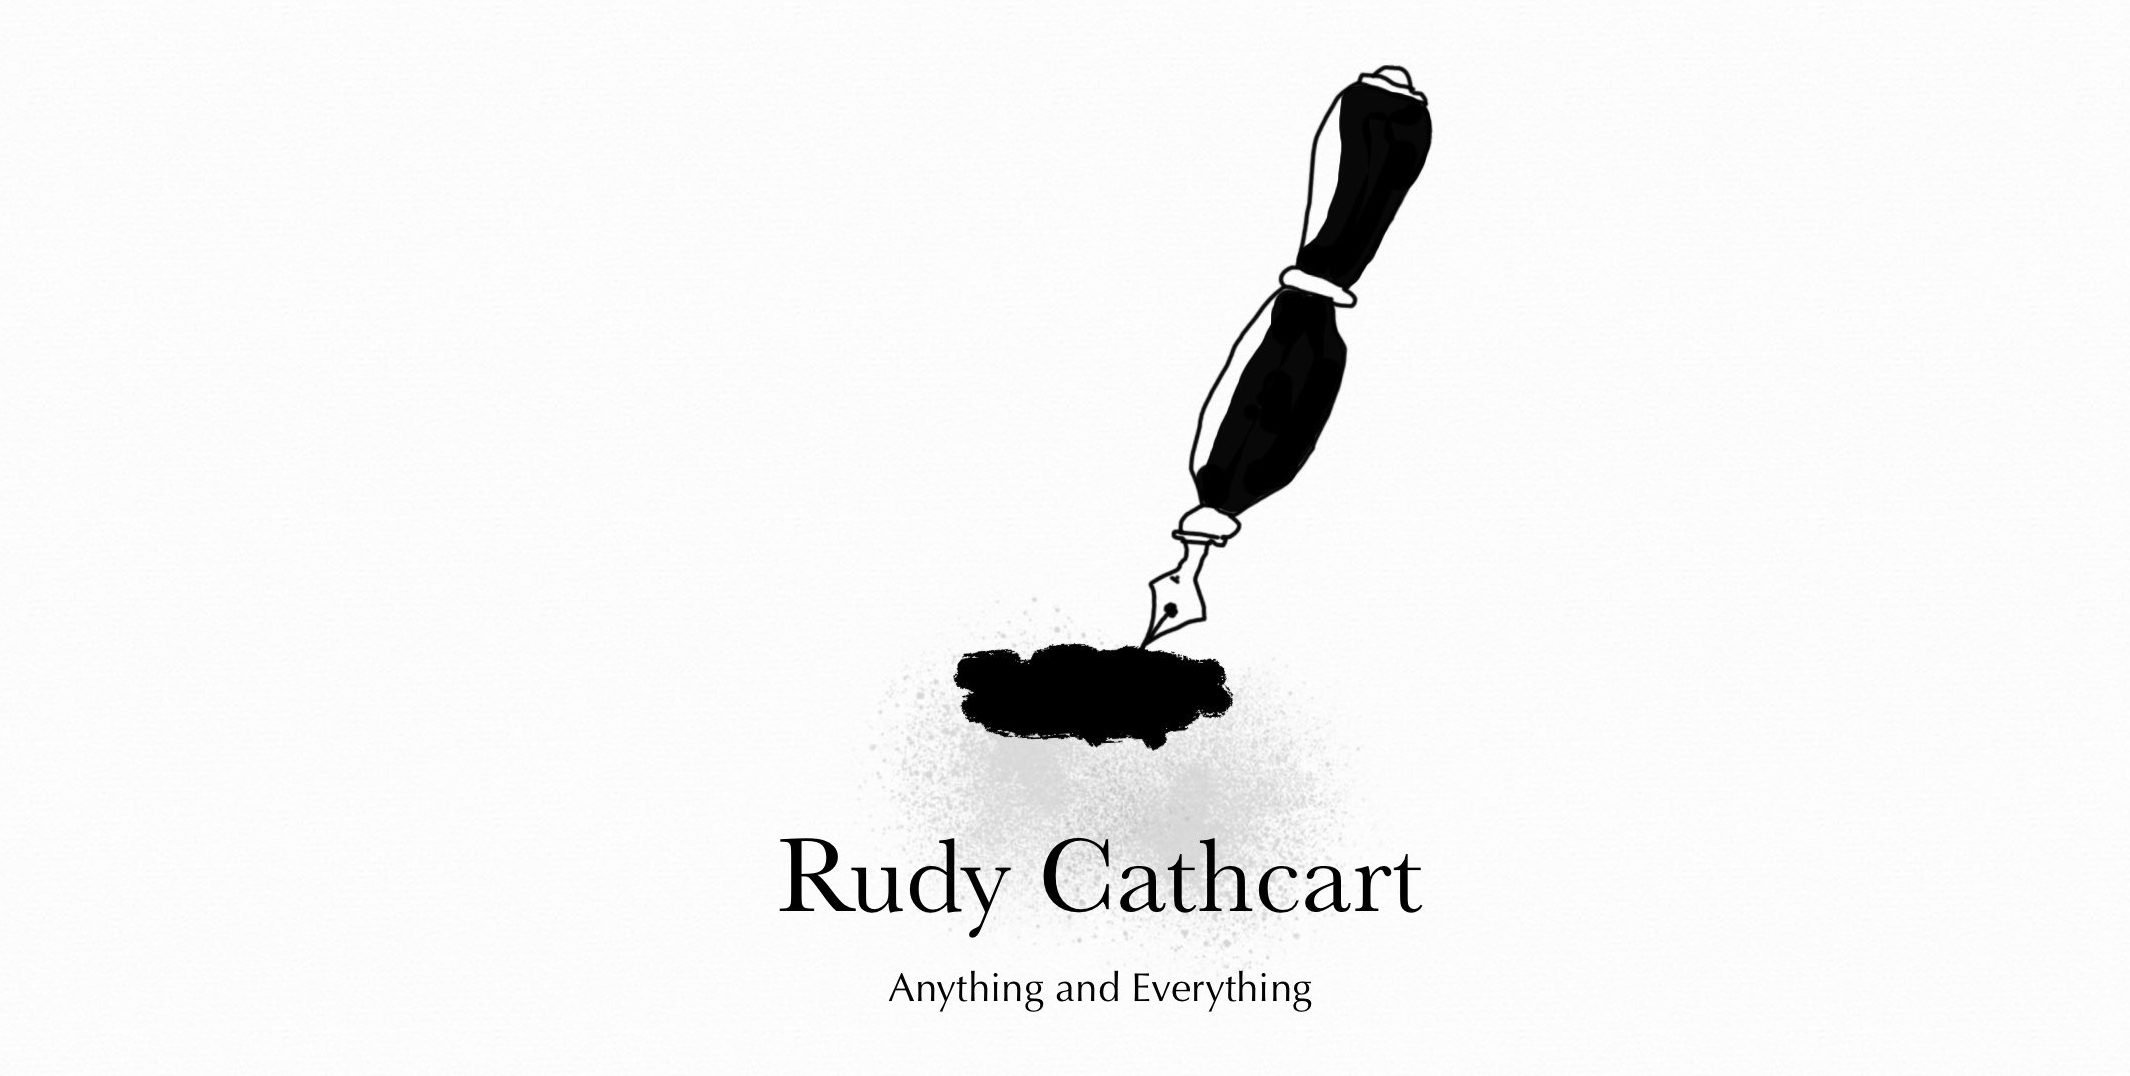 Rudy Cathcart